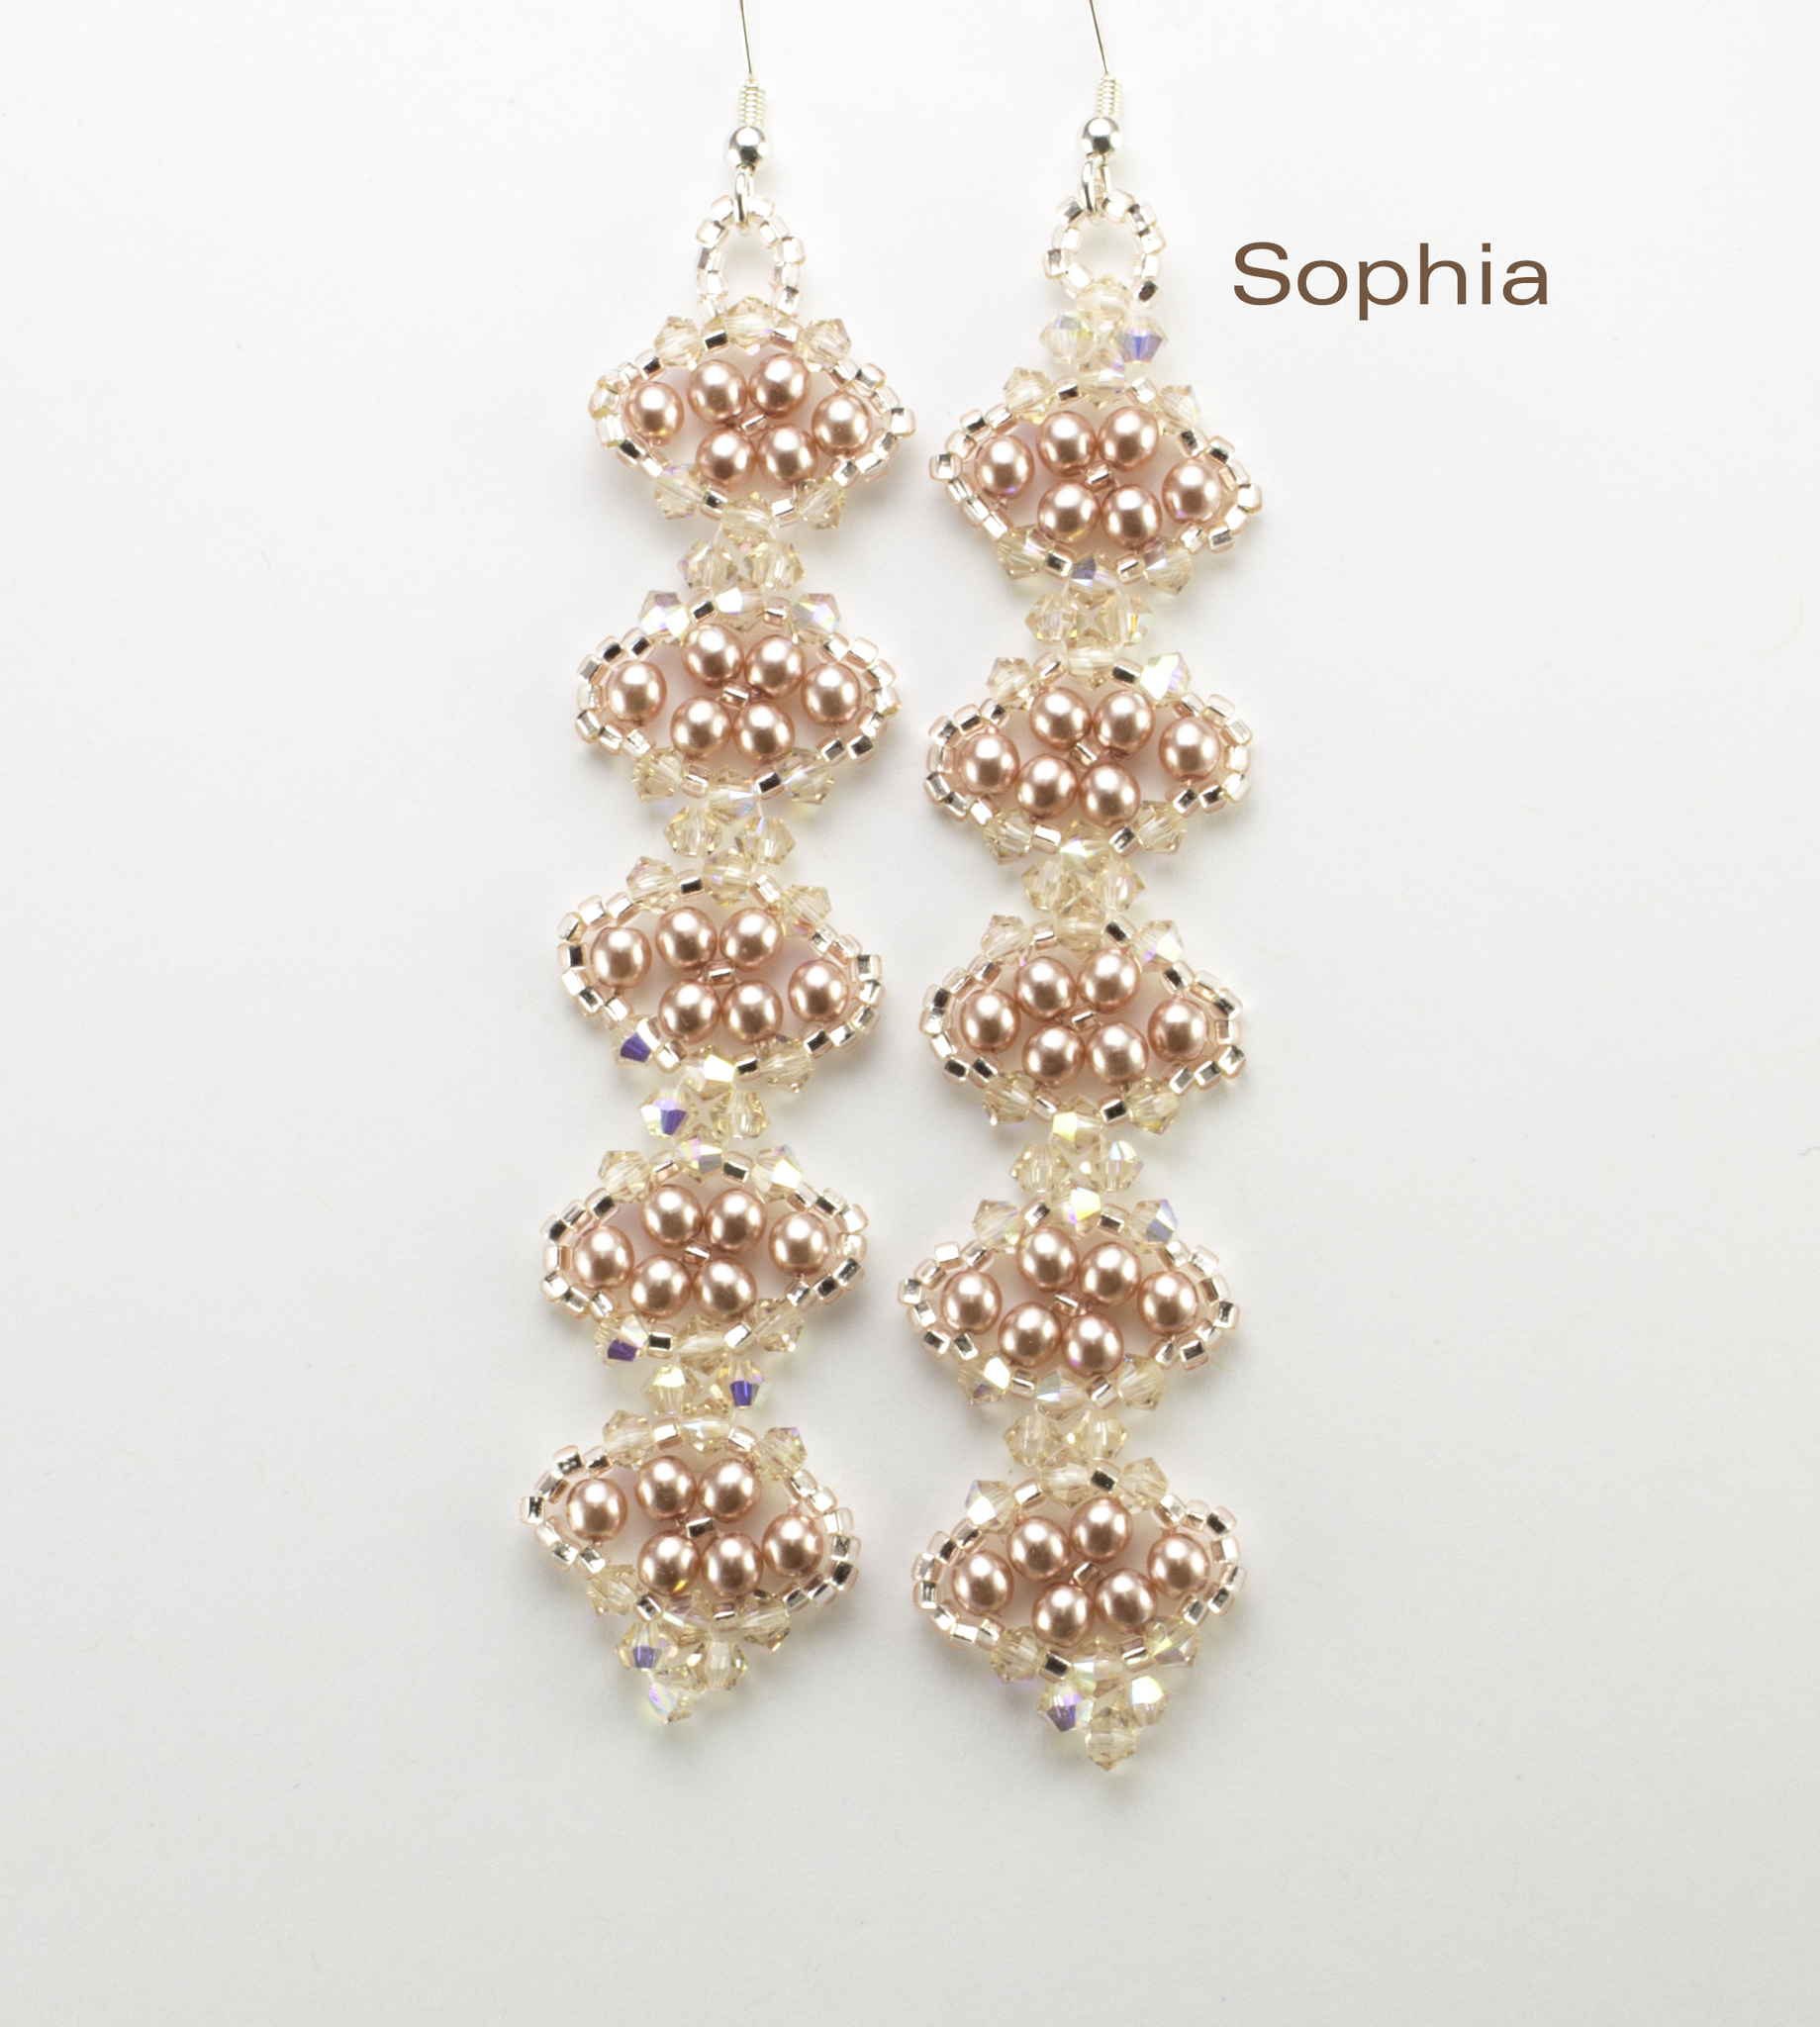 Sophia Earring Bead Weaving Kit - Beads Gone Wild
 - 2